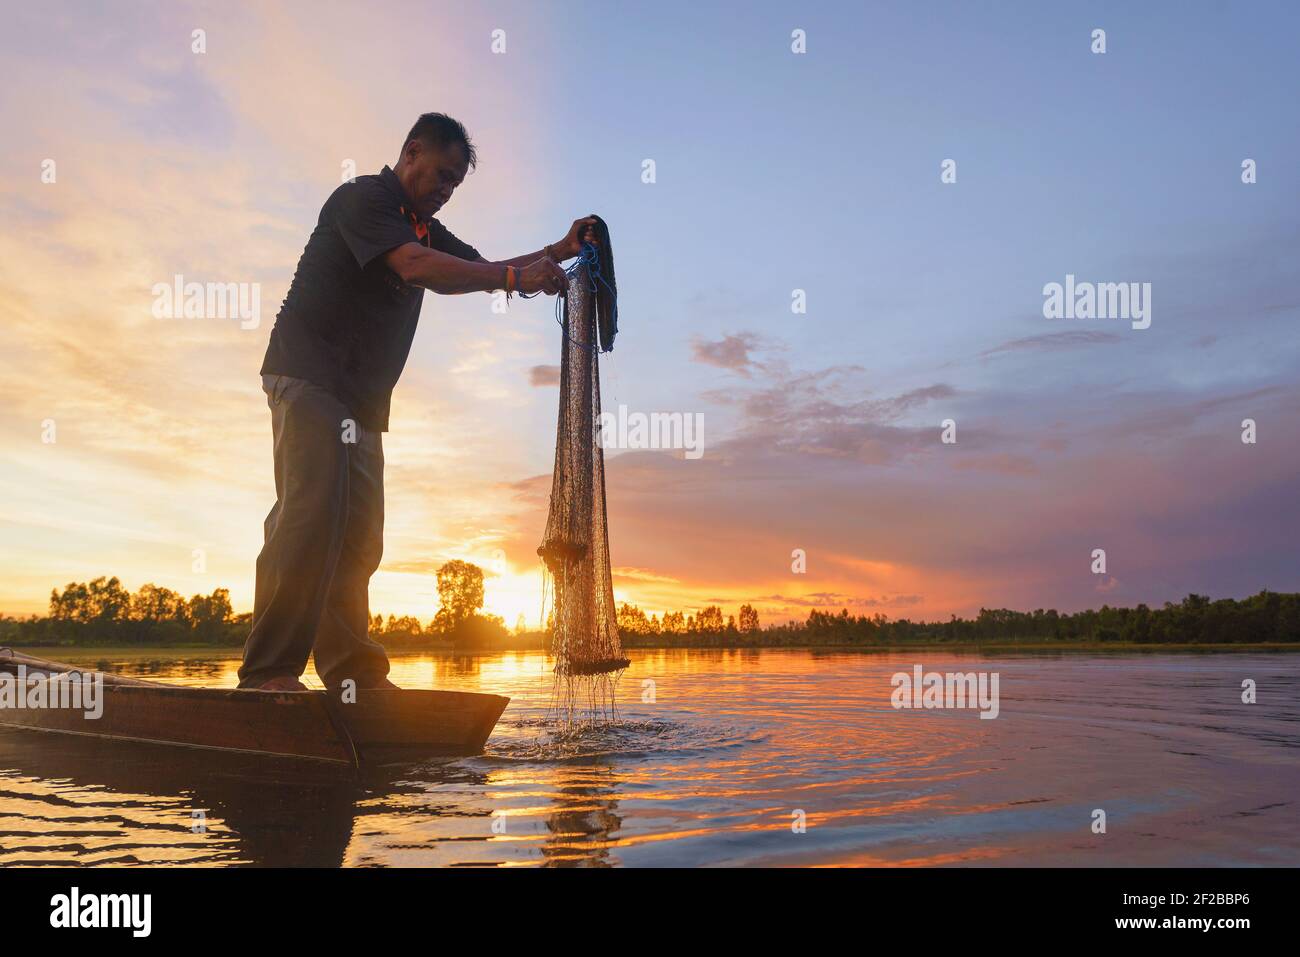 Silhouette d'un pêcheur debout dans un bateau tenant un filet de pêche au coucher du soleil, Thaïlande Banque D'Images